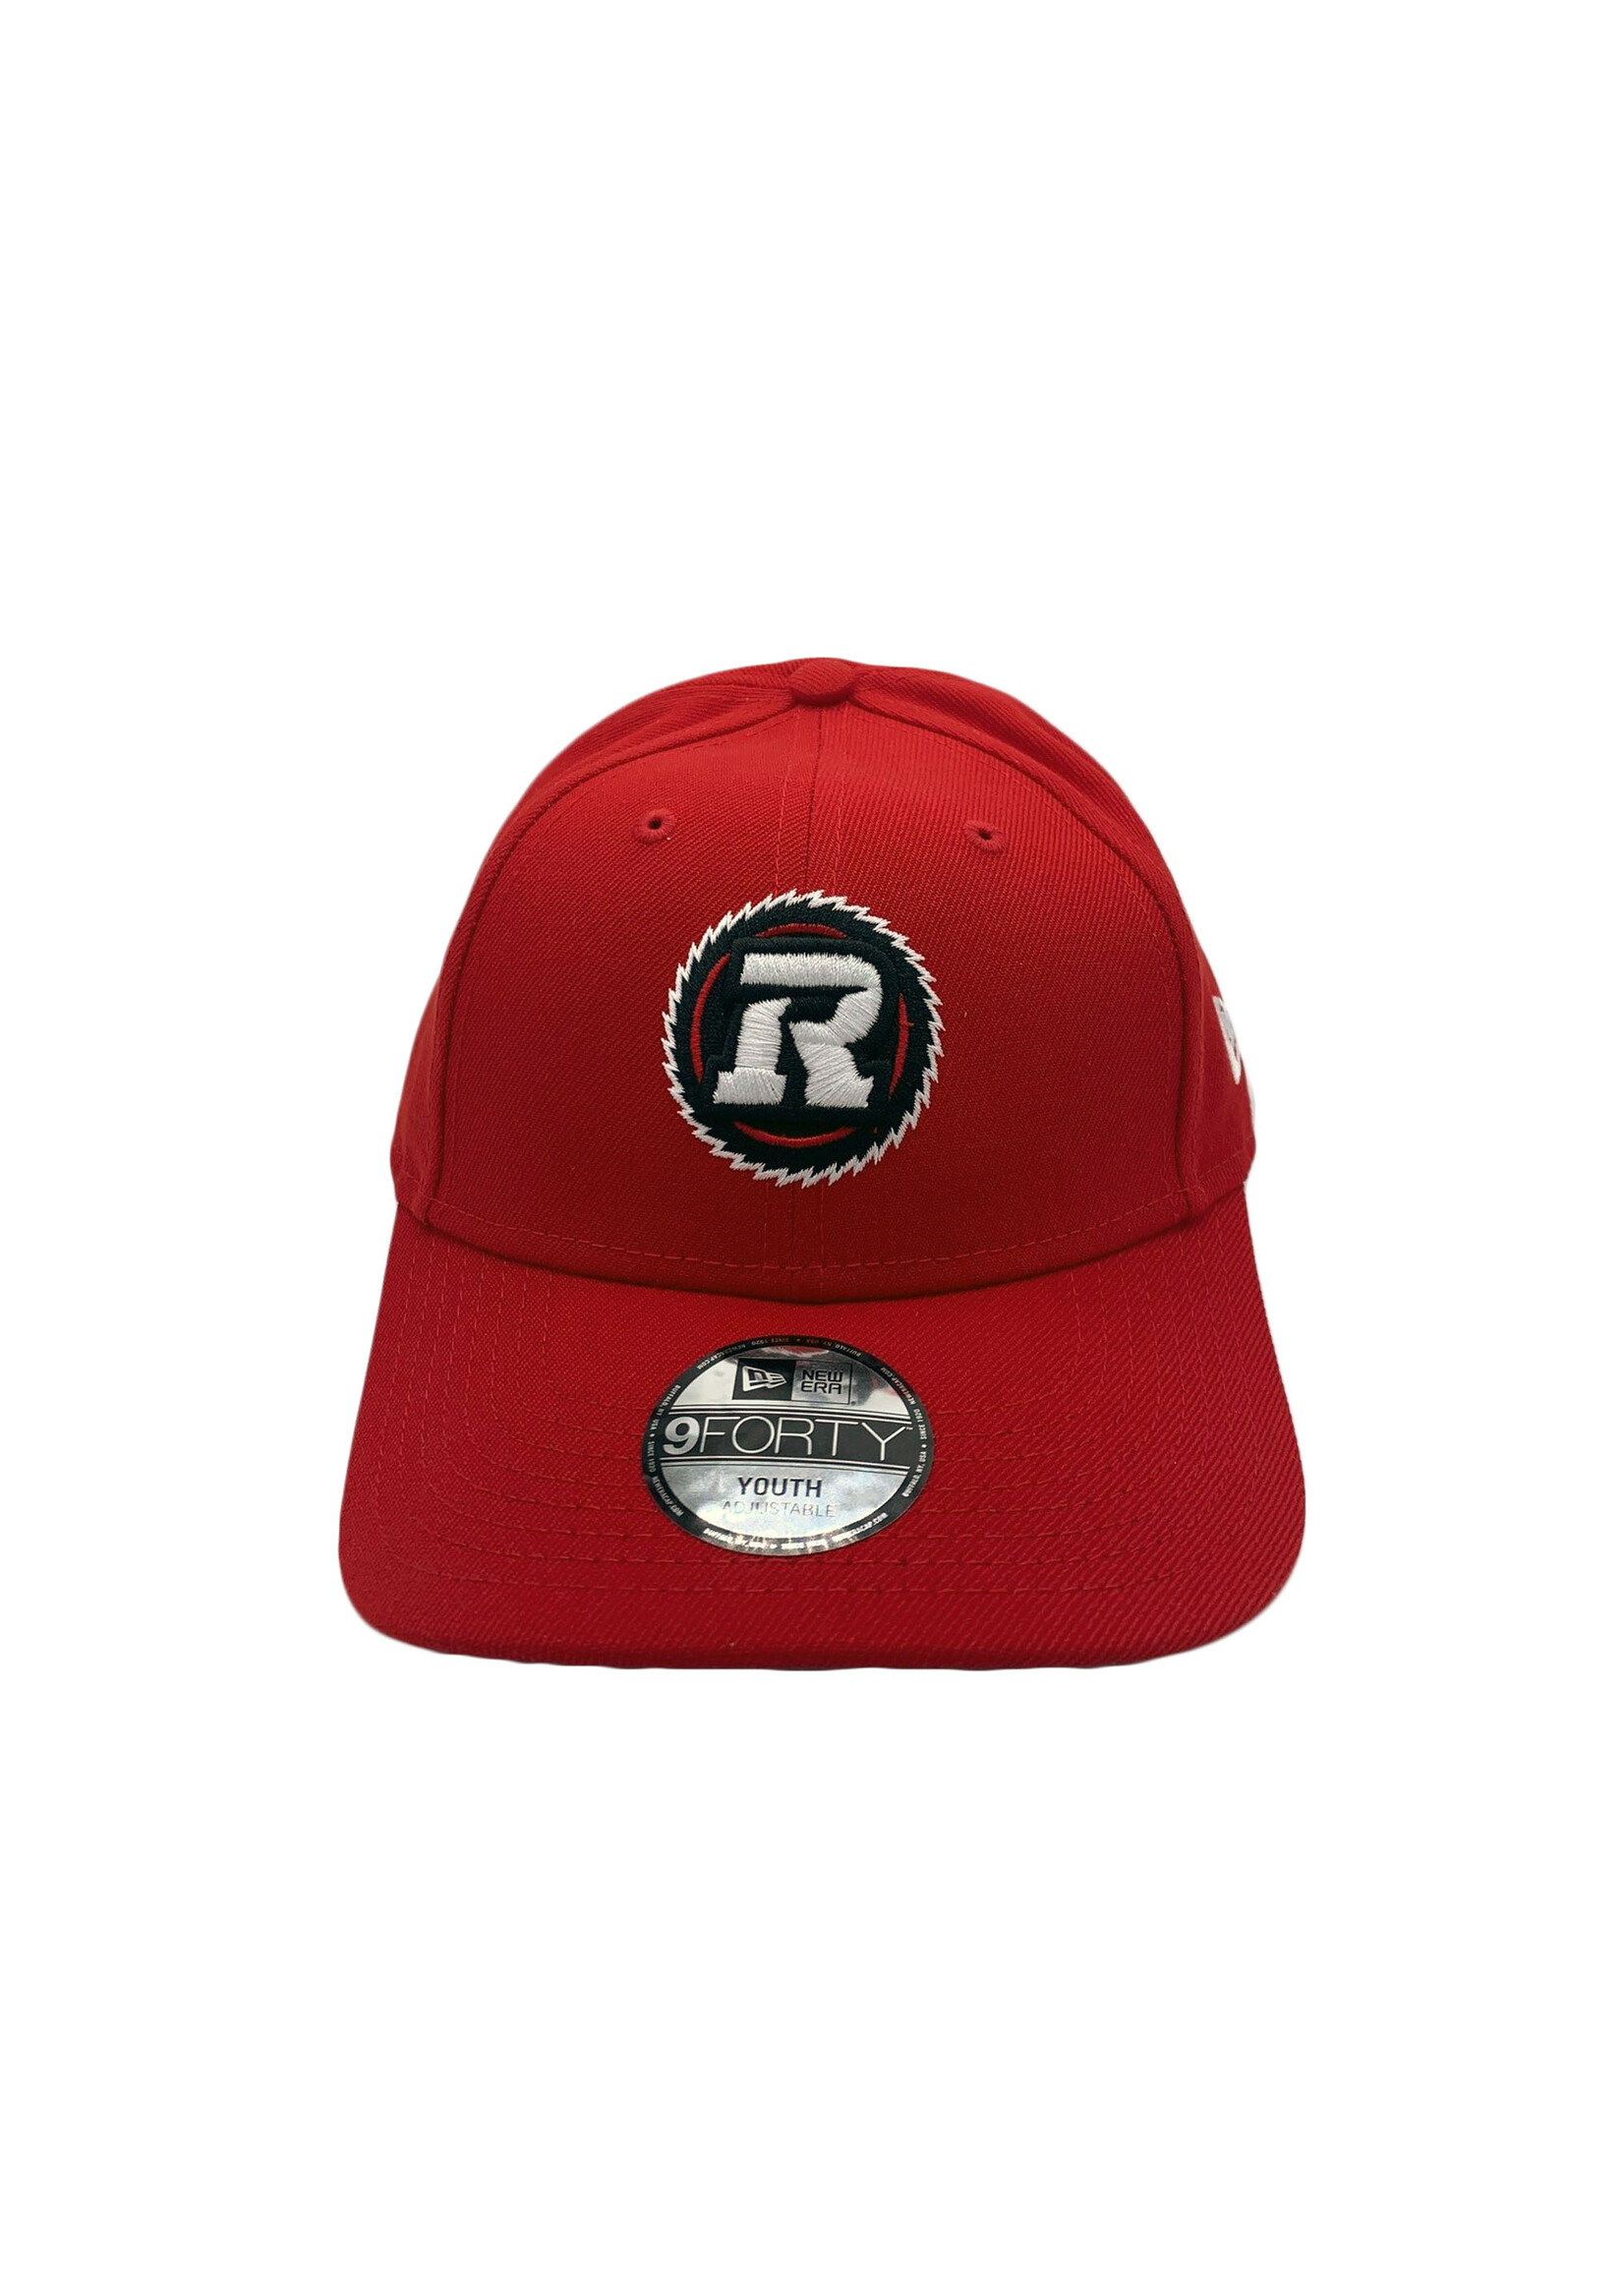 REDBLACKS REDBLACKS Little Red 940 Youth Hat